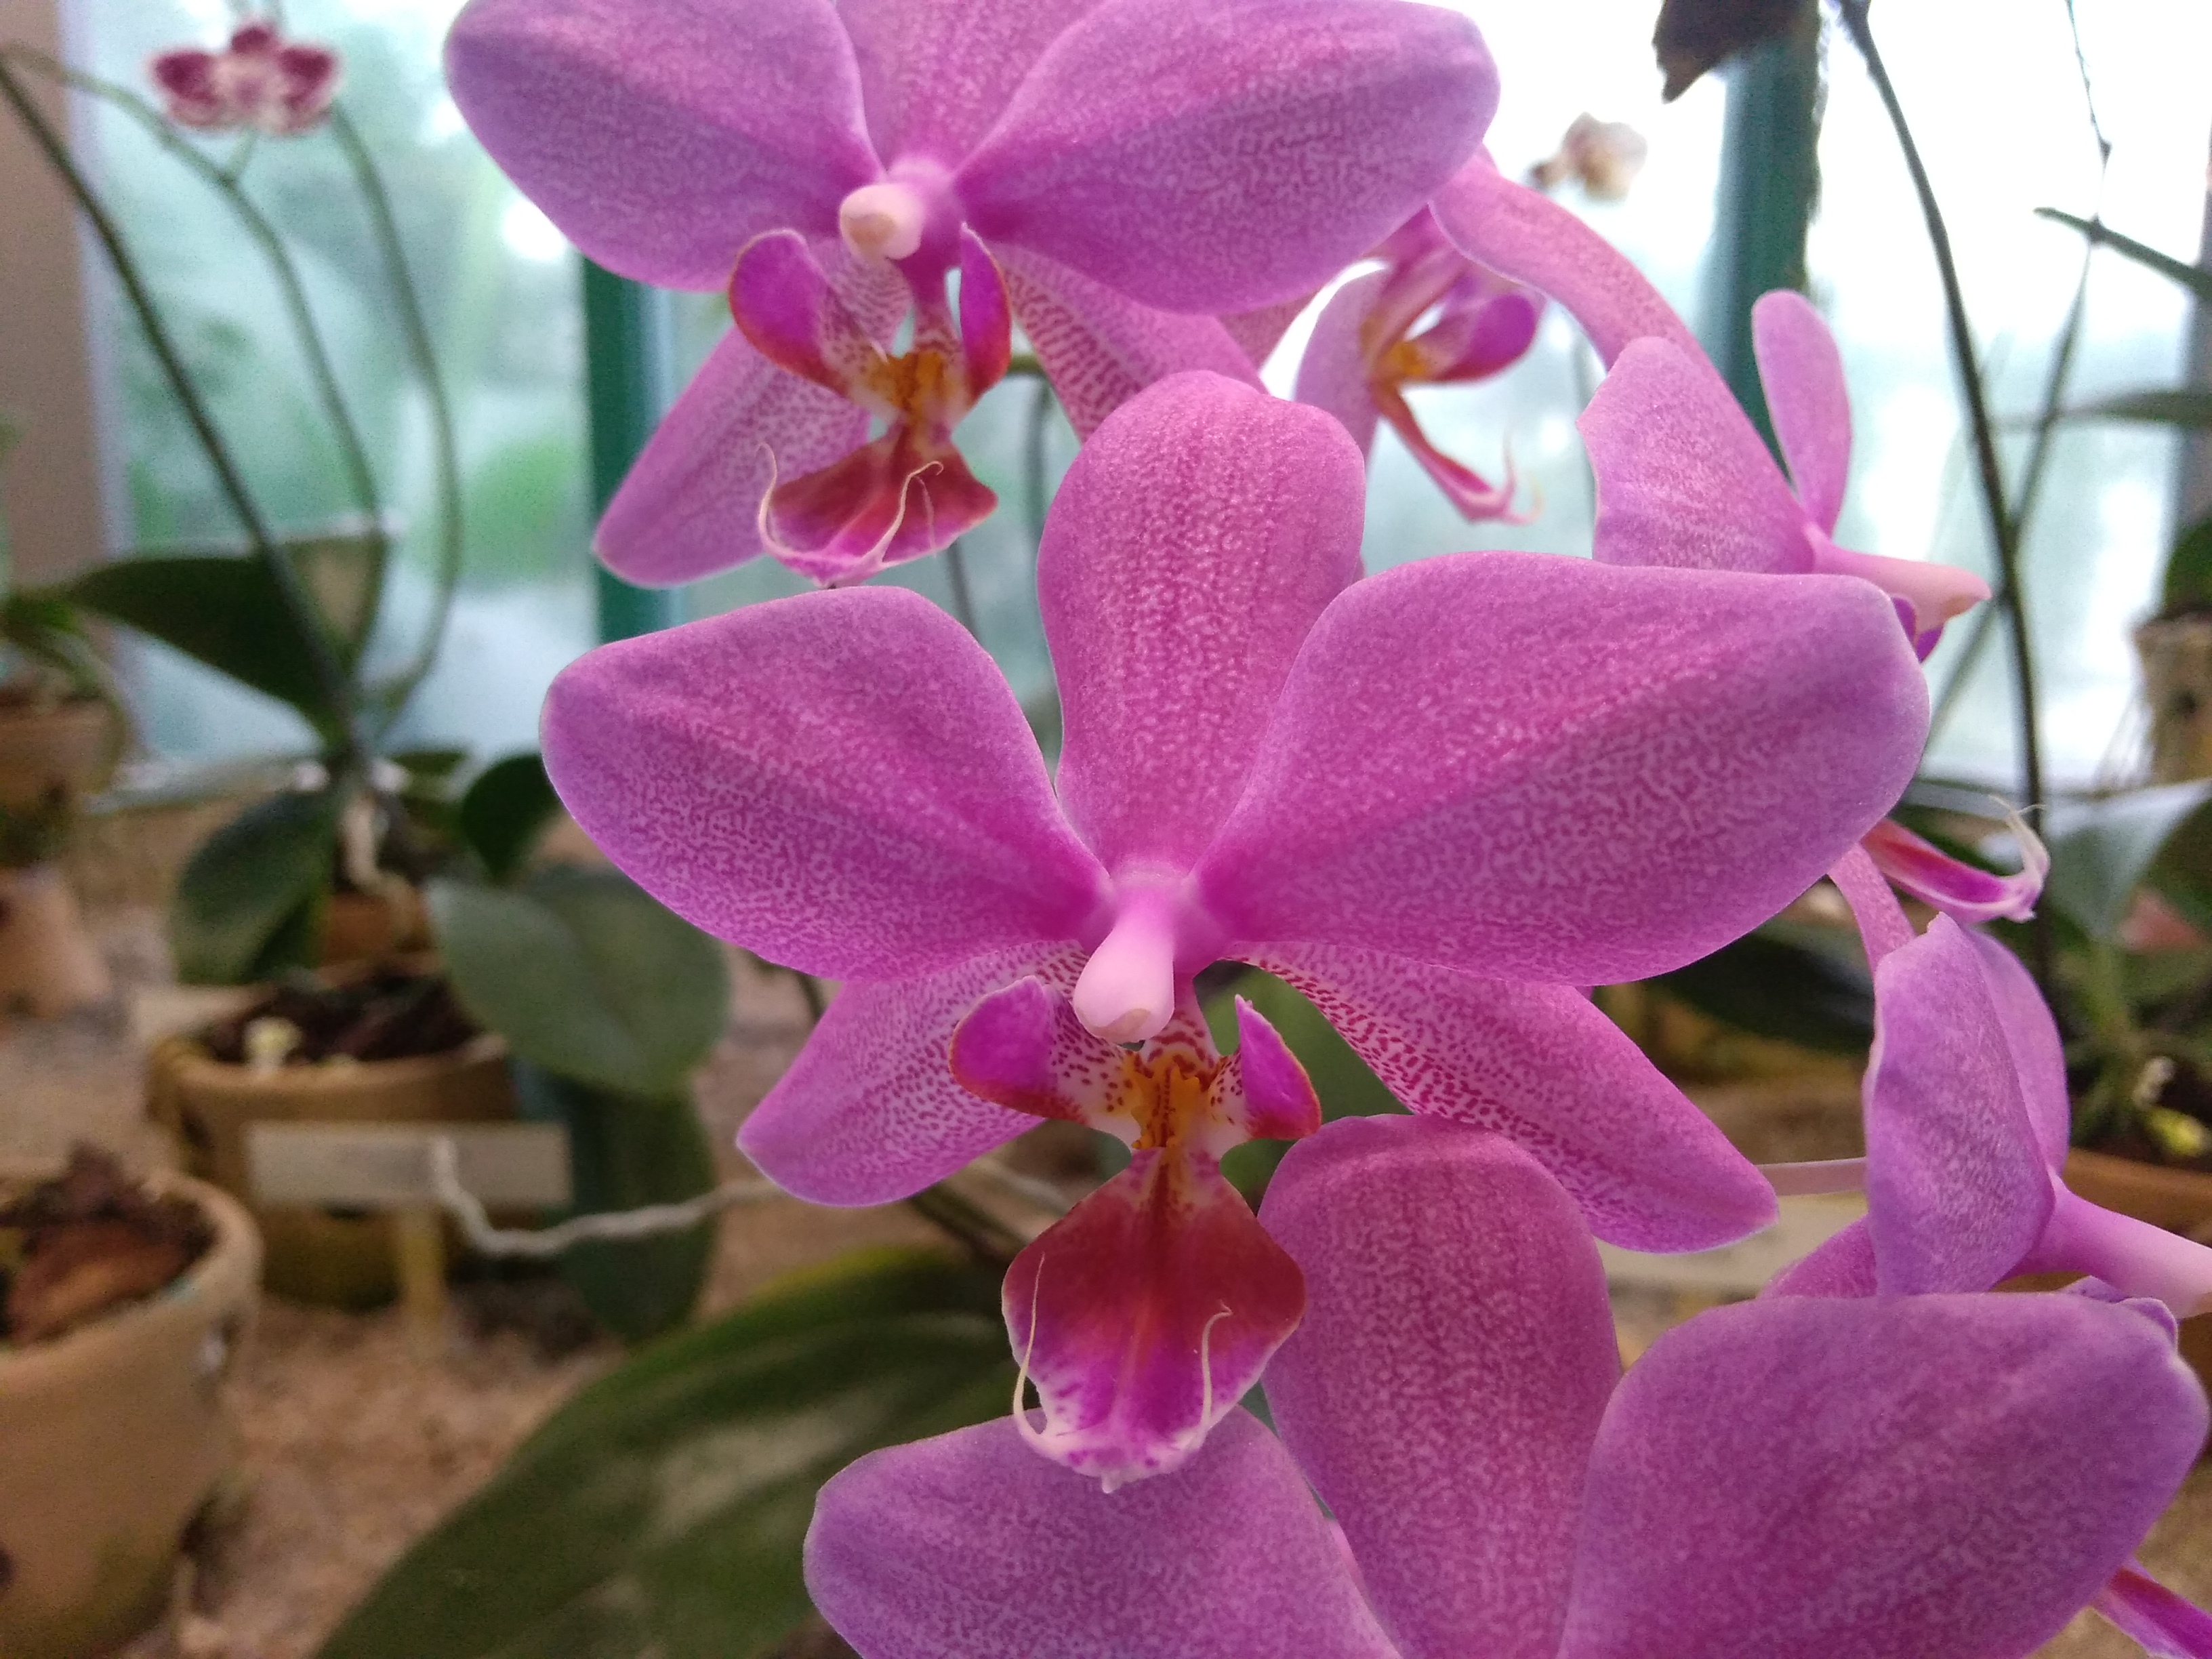 Botanická zahrada v Liberci hlásí, že v těchto lednových dnech kvetou orchideje